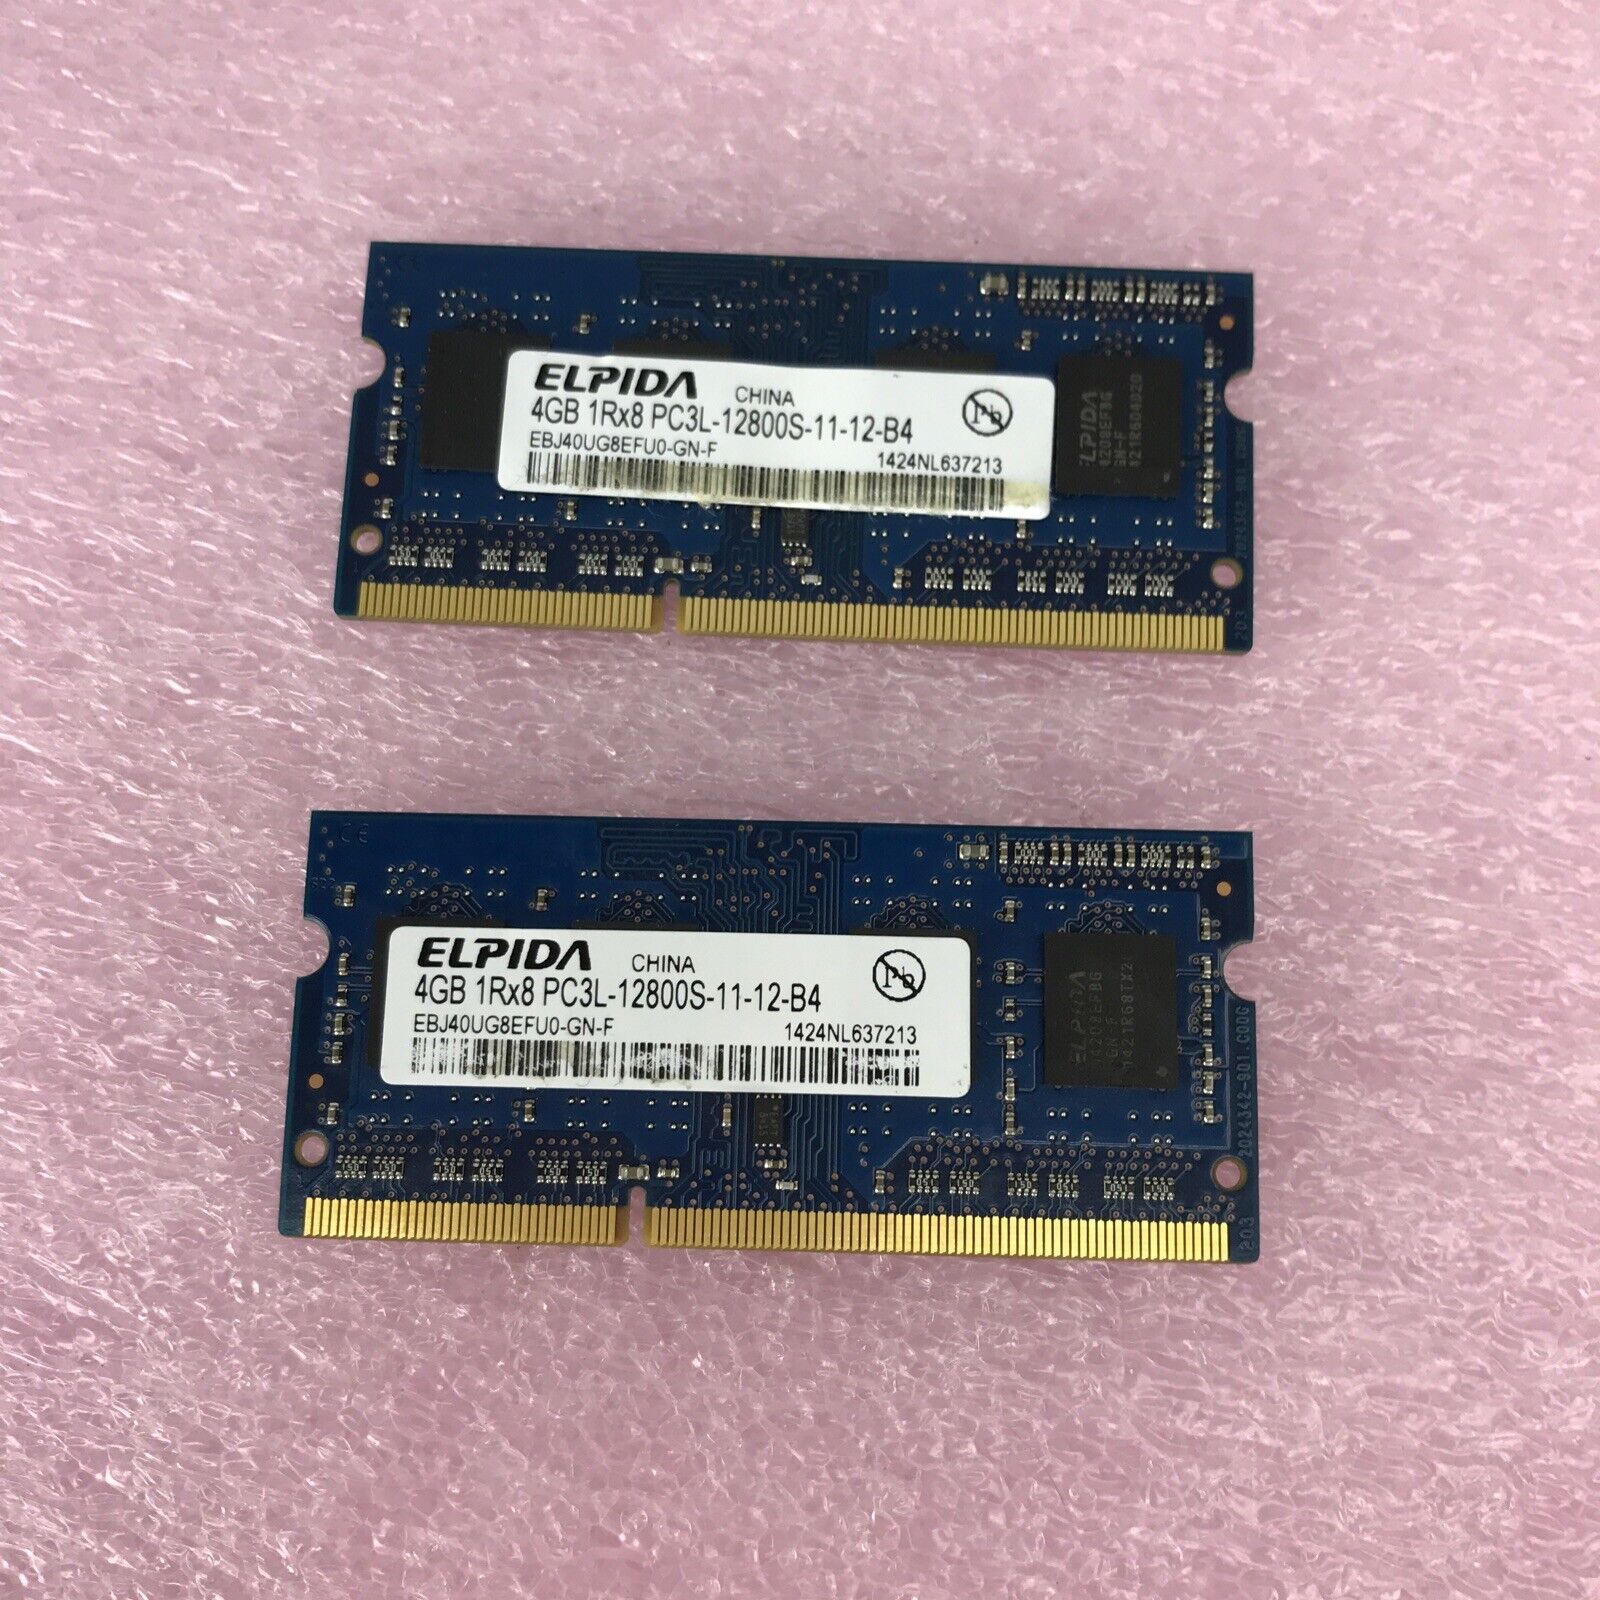 Lot of 2 Elpida 4GB 1Rx8 PC3L-12800S-11-12-B4 RAM Module EBJ4OUG8EFOU-GN-F